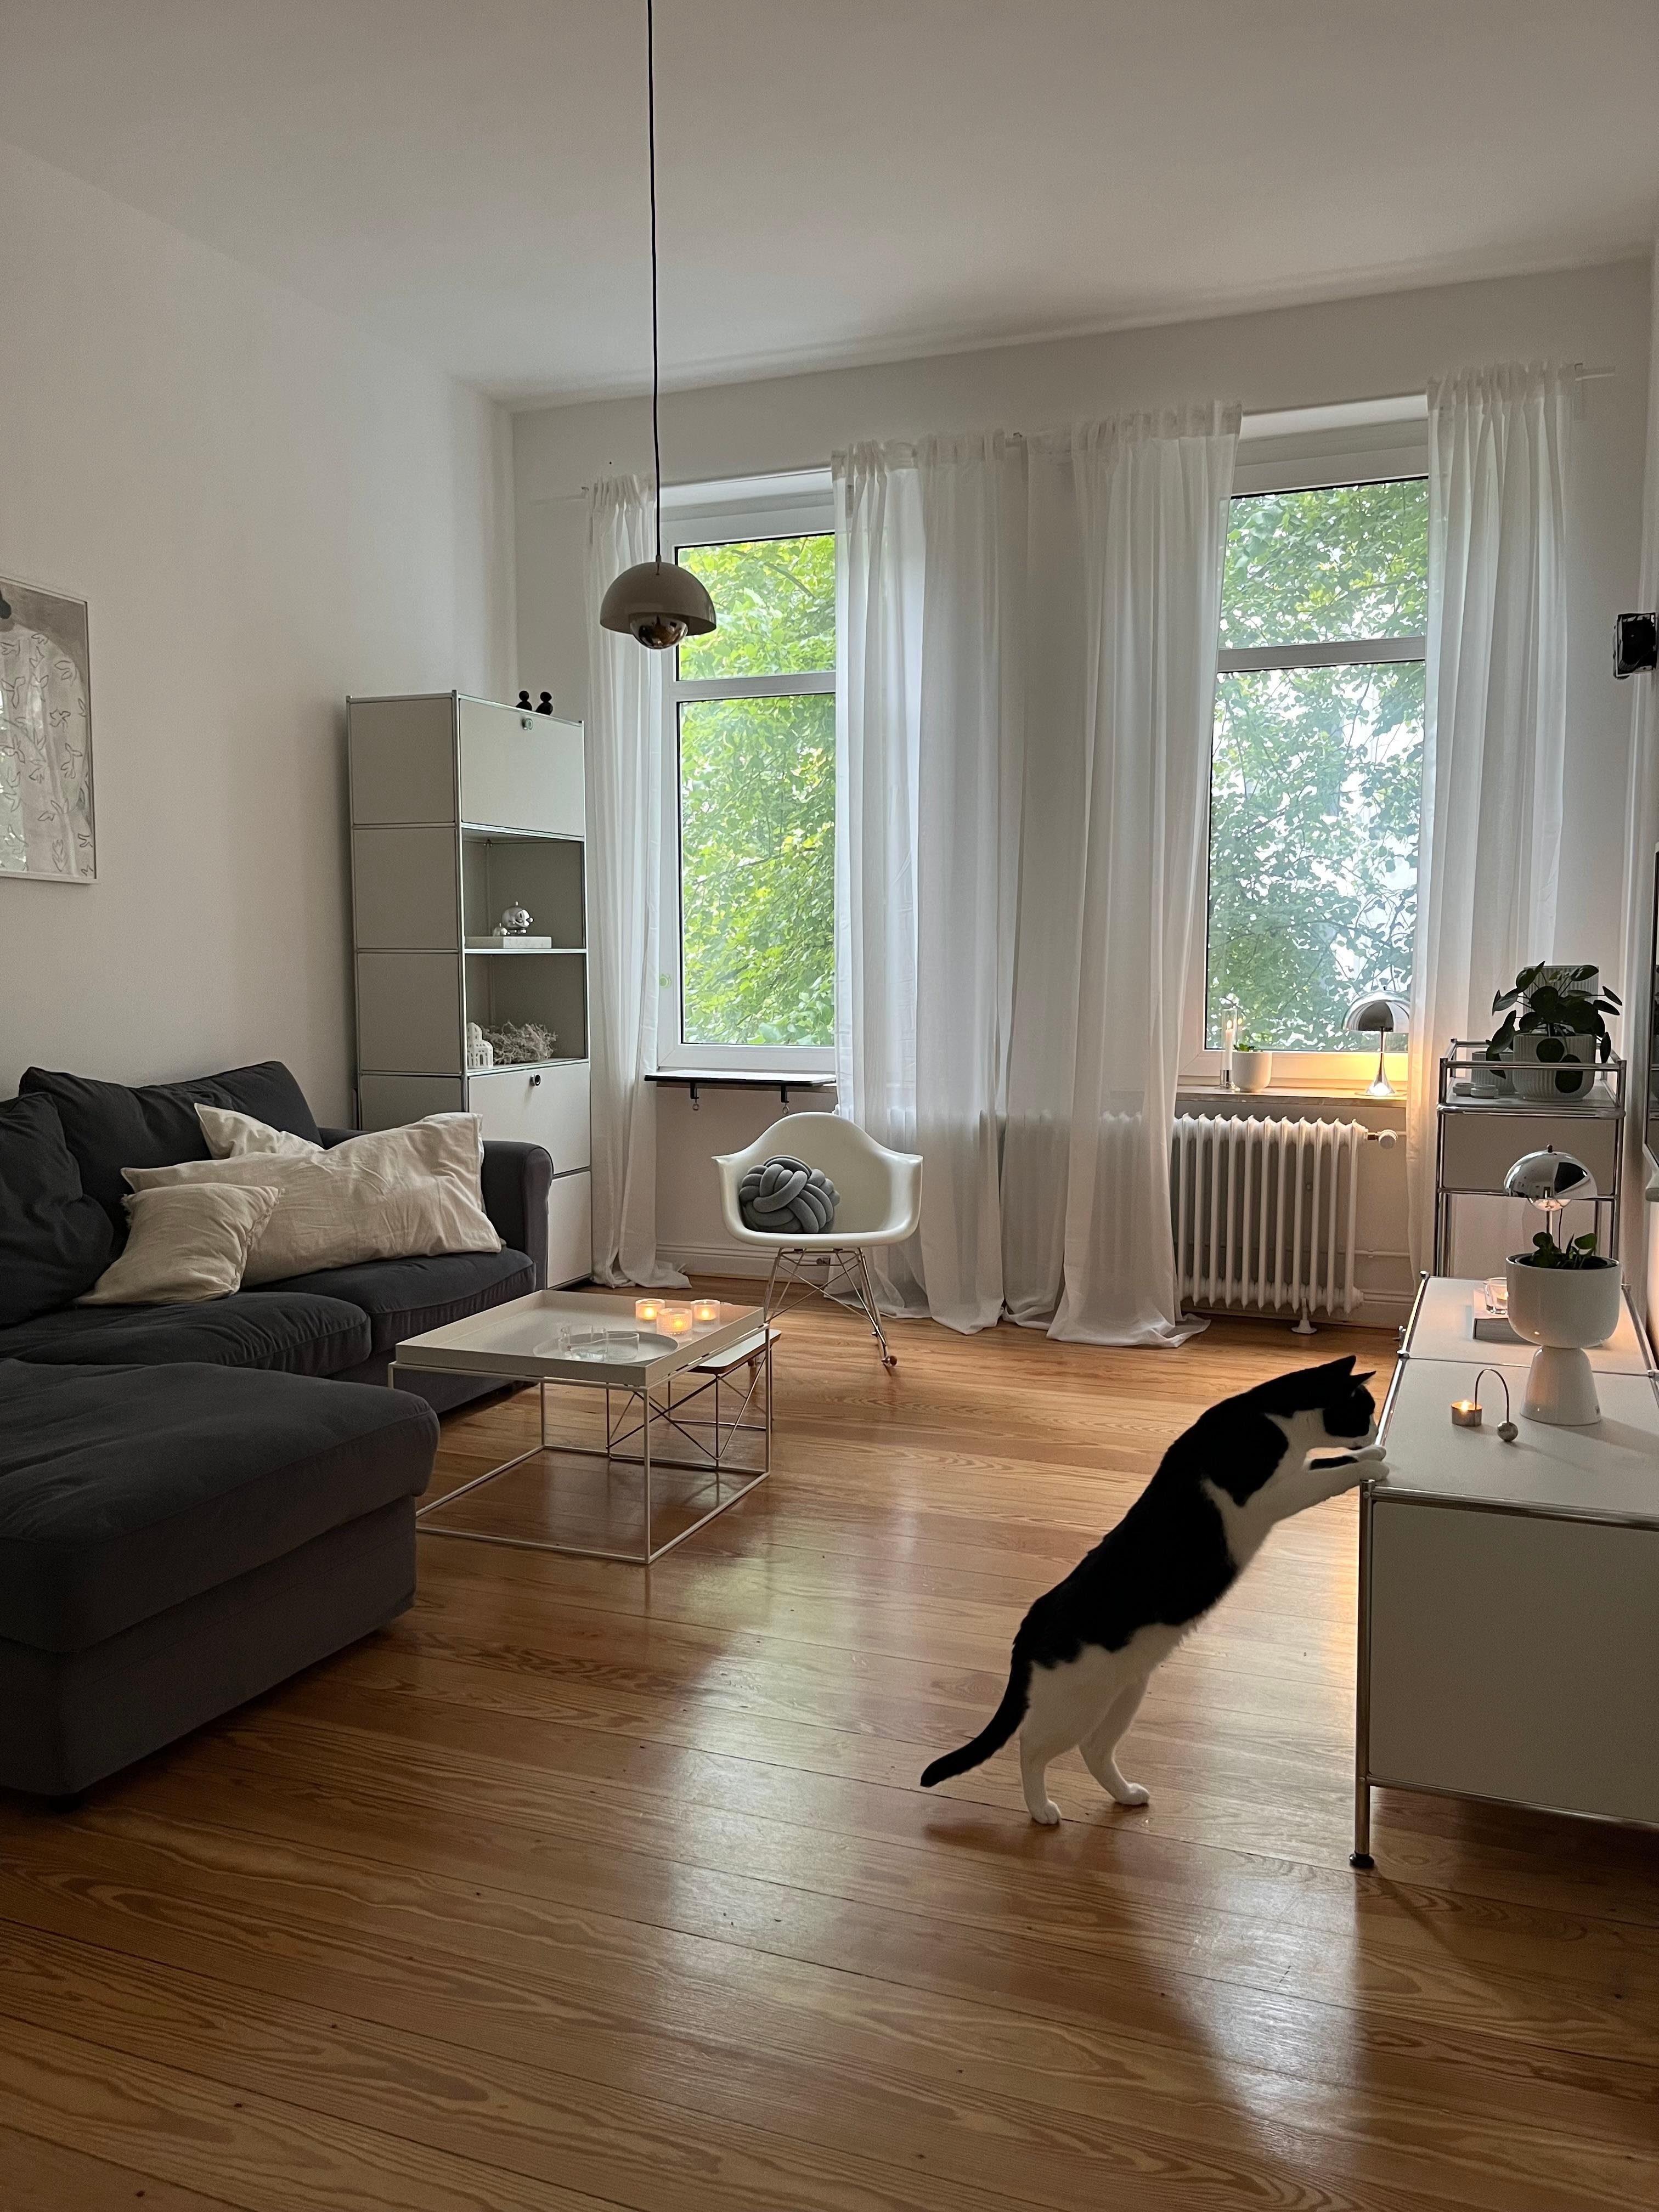 #wohnzimmer #katzenwohnung #altbauliebe #skandinavischwohnen #interior #minimalismus #danishdesign